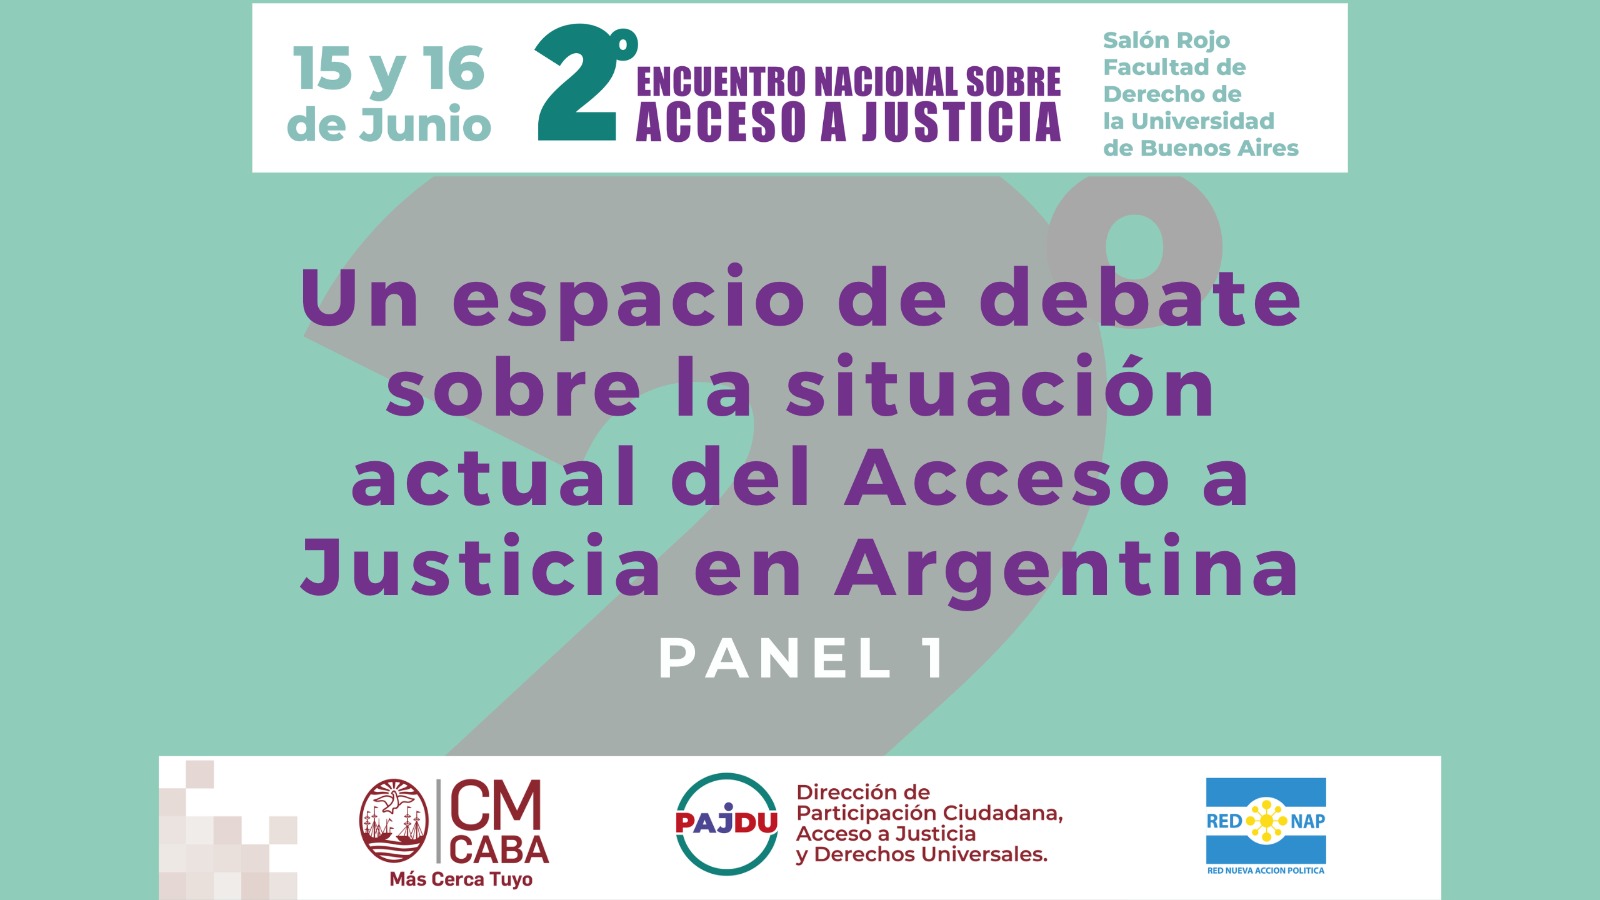 Panel 1: Acceso a Justicia con perspectiva federal del 2do. Encuentro Nacional sobre Acceso a Justicia en Argentina.